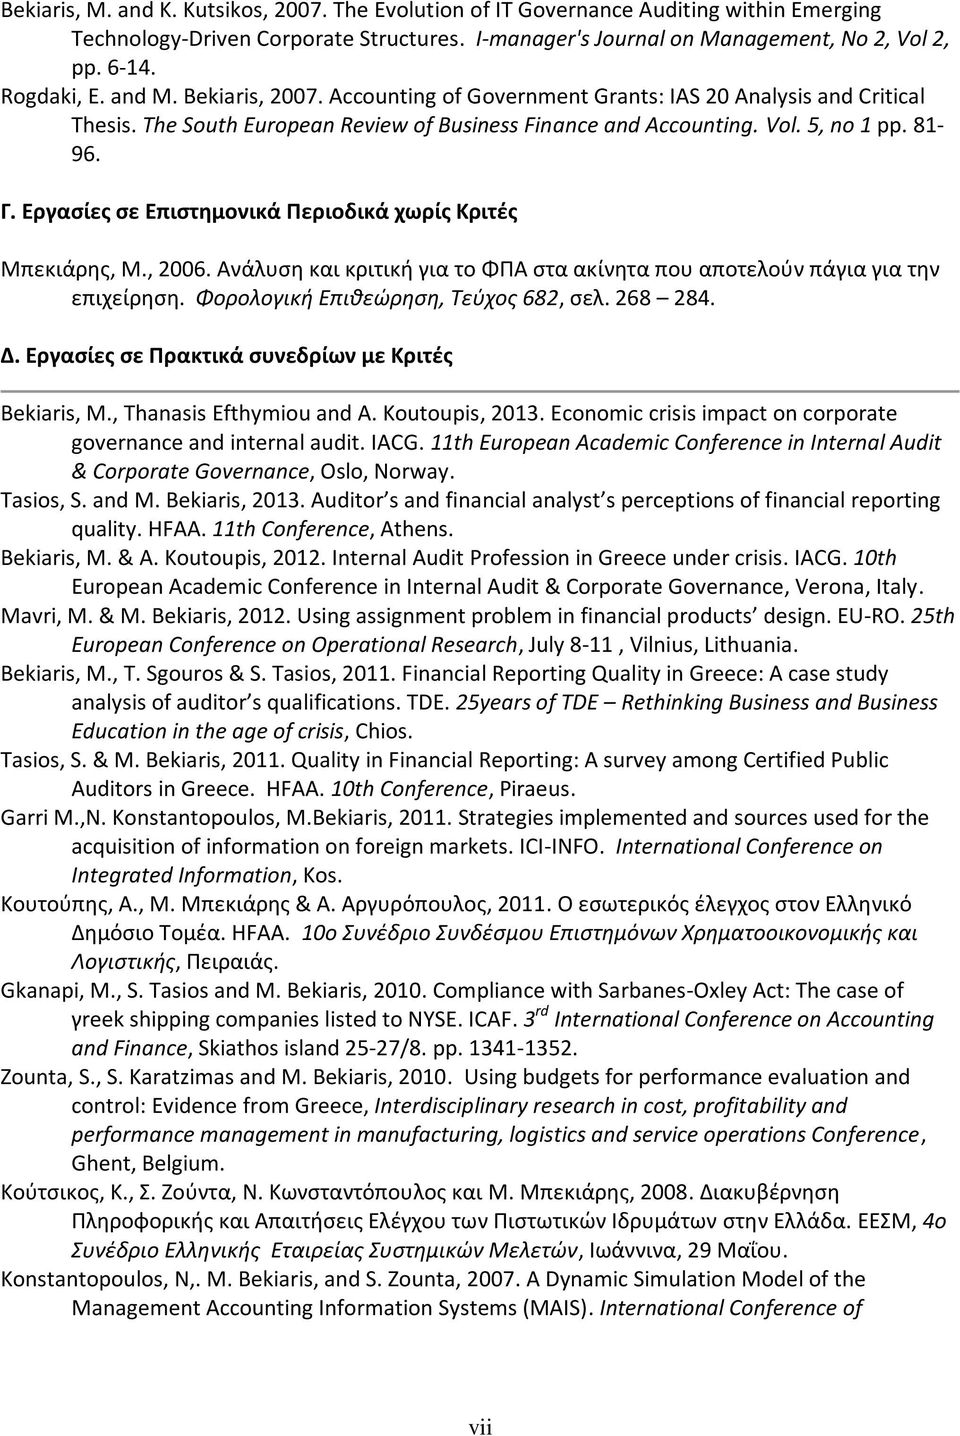 Εργασίες σε Επιστημονικά Περιοδικά χωρίς Κριτές Μπεκιάρης, M., 2006. Ανάλυση και κριτική για το ΦΠΑ στα ακίνητα που αποτελούν πάγια για την επιχείρηση. Φορολογική Επιθεώρηση, Τεύχος 682, σελ. 268 284.